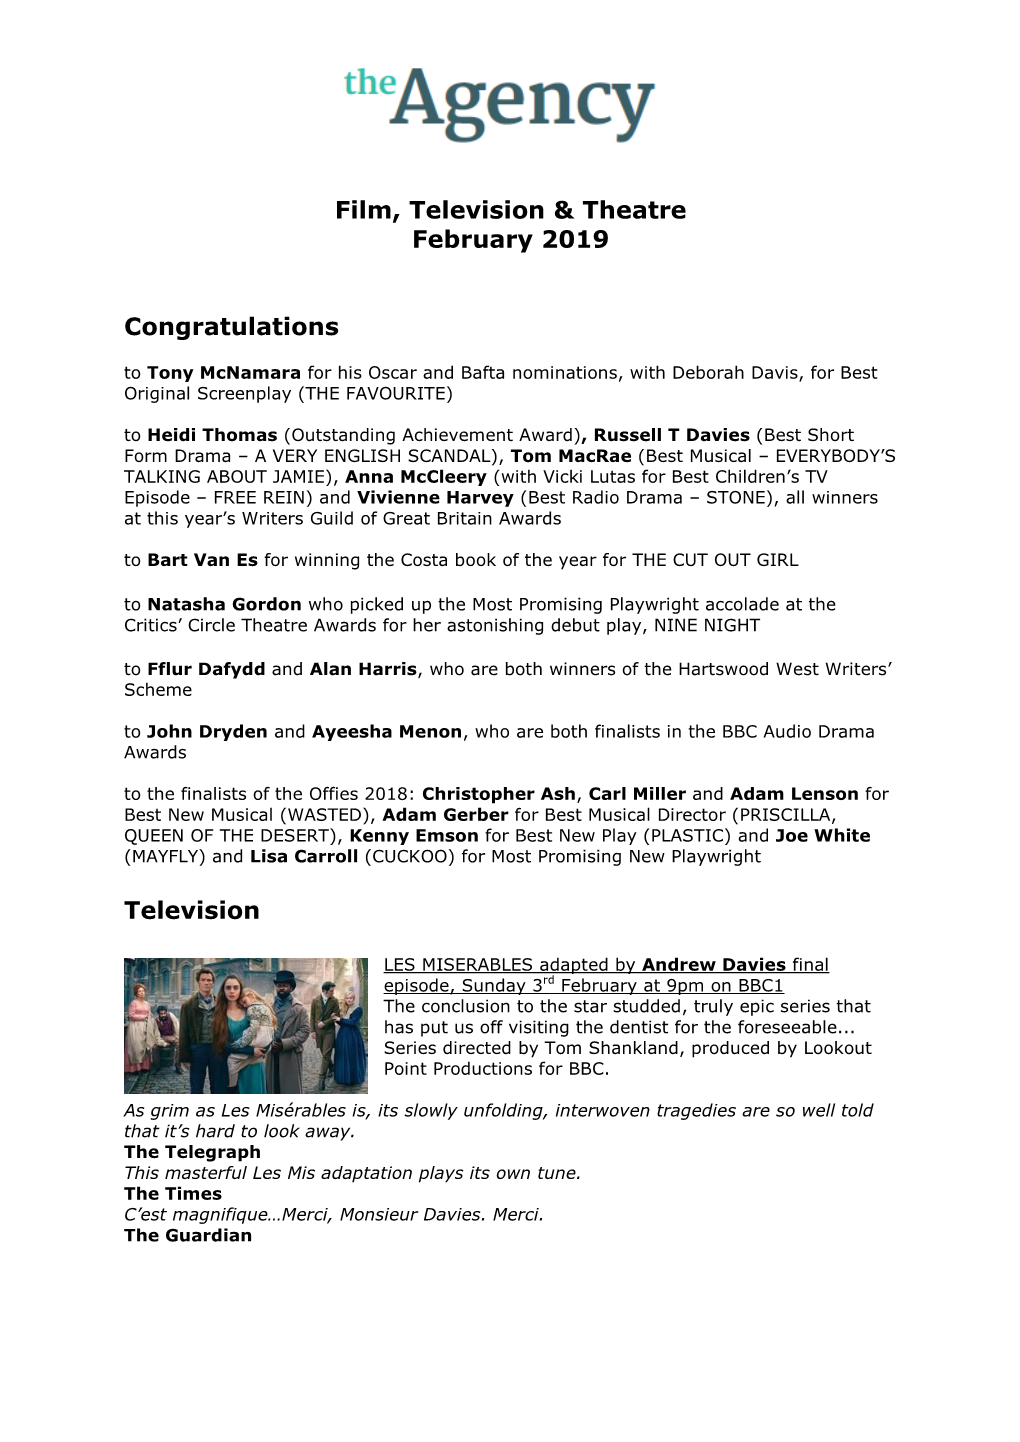 Film, Television & Theatre February 2019 Congratulations Television